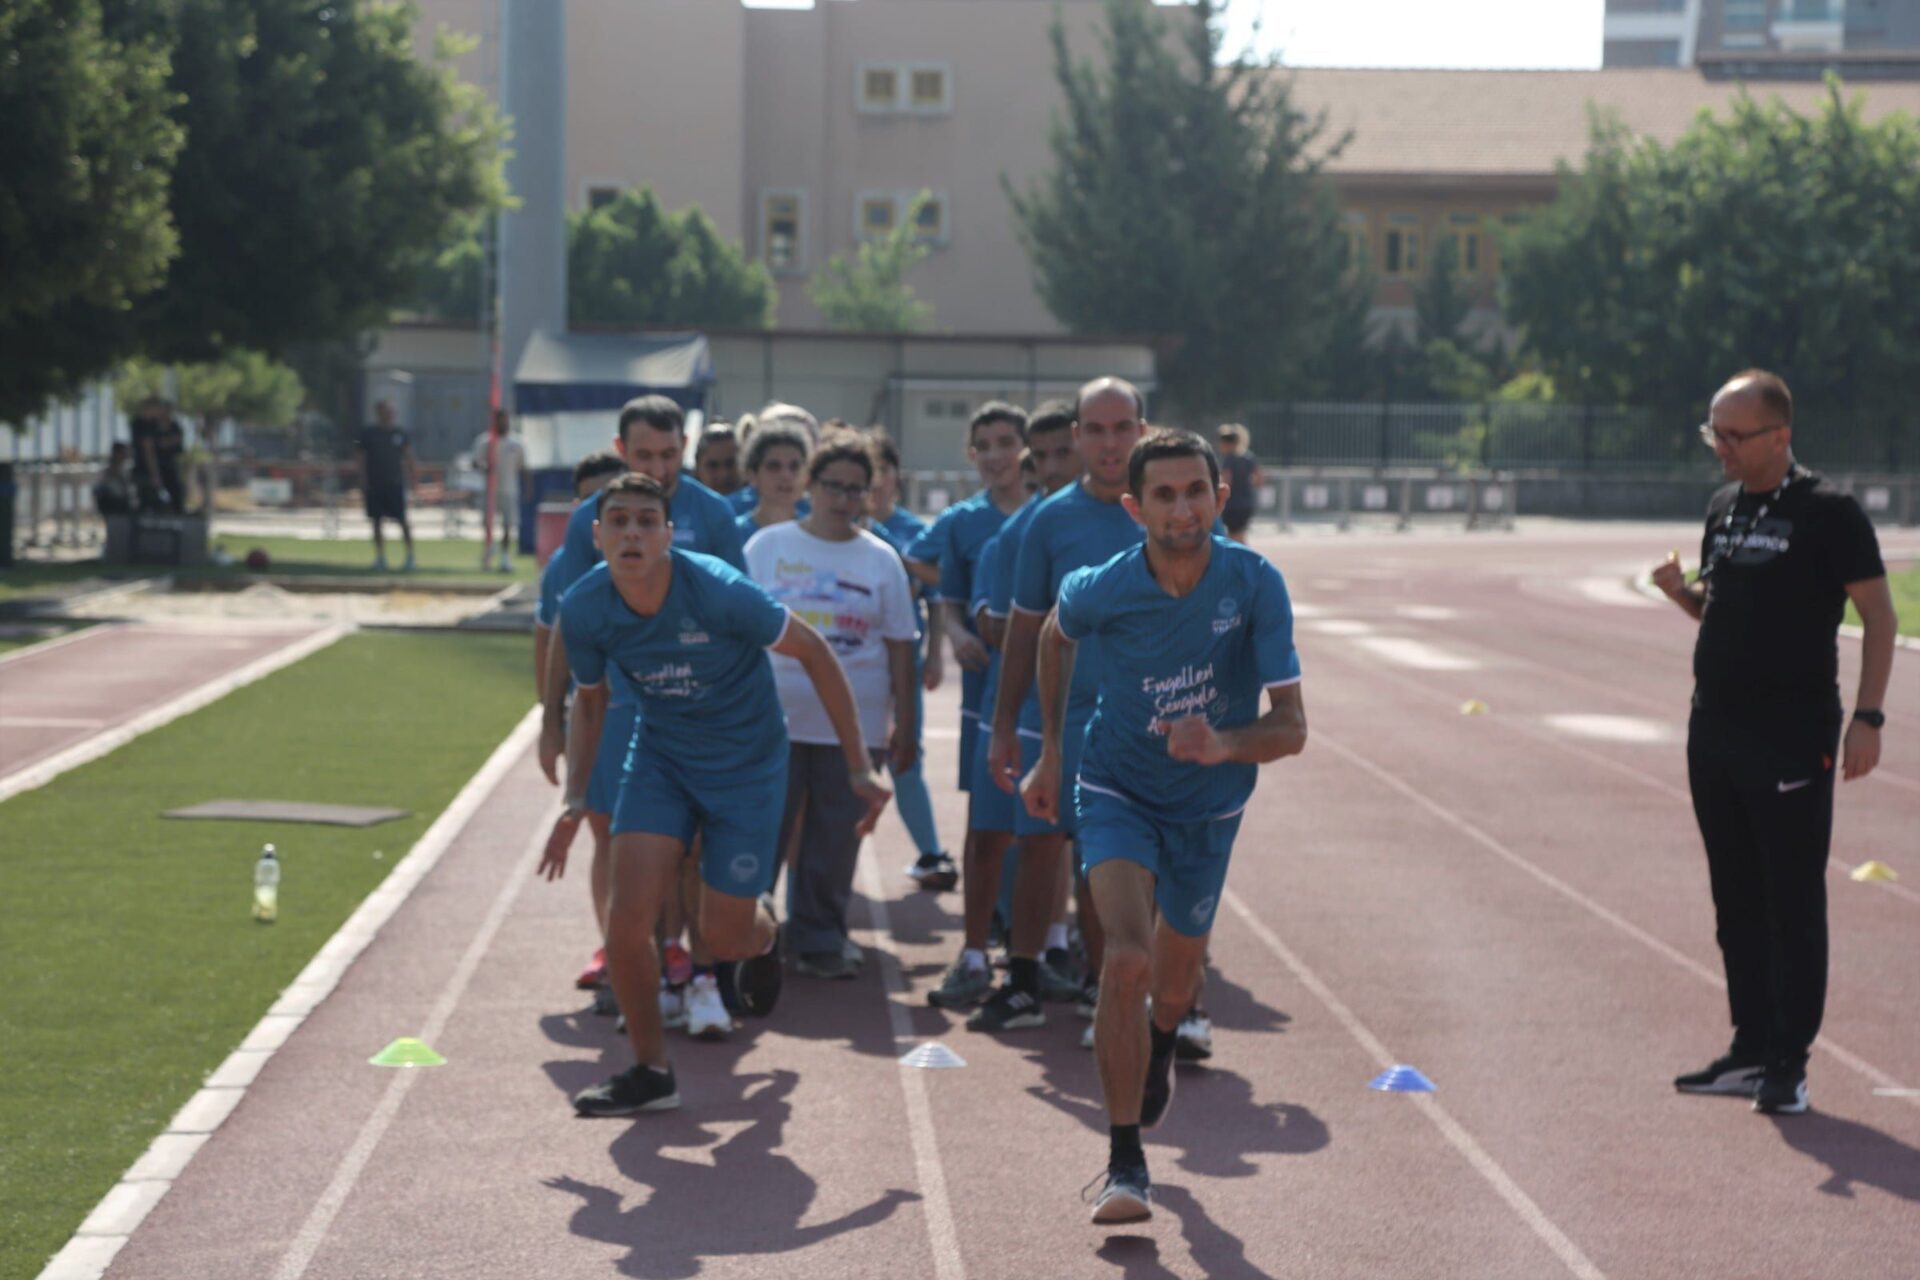 Mersin’de Engeller Sporla Aşıldı: “Engelleri Sevgiyle Aşıyoruz”